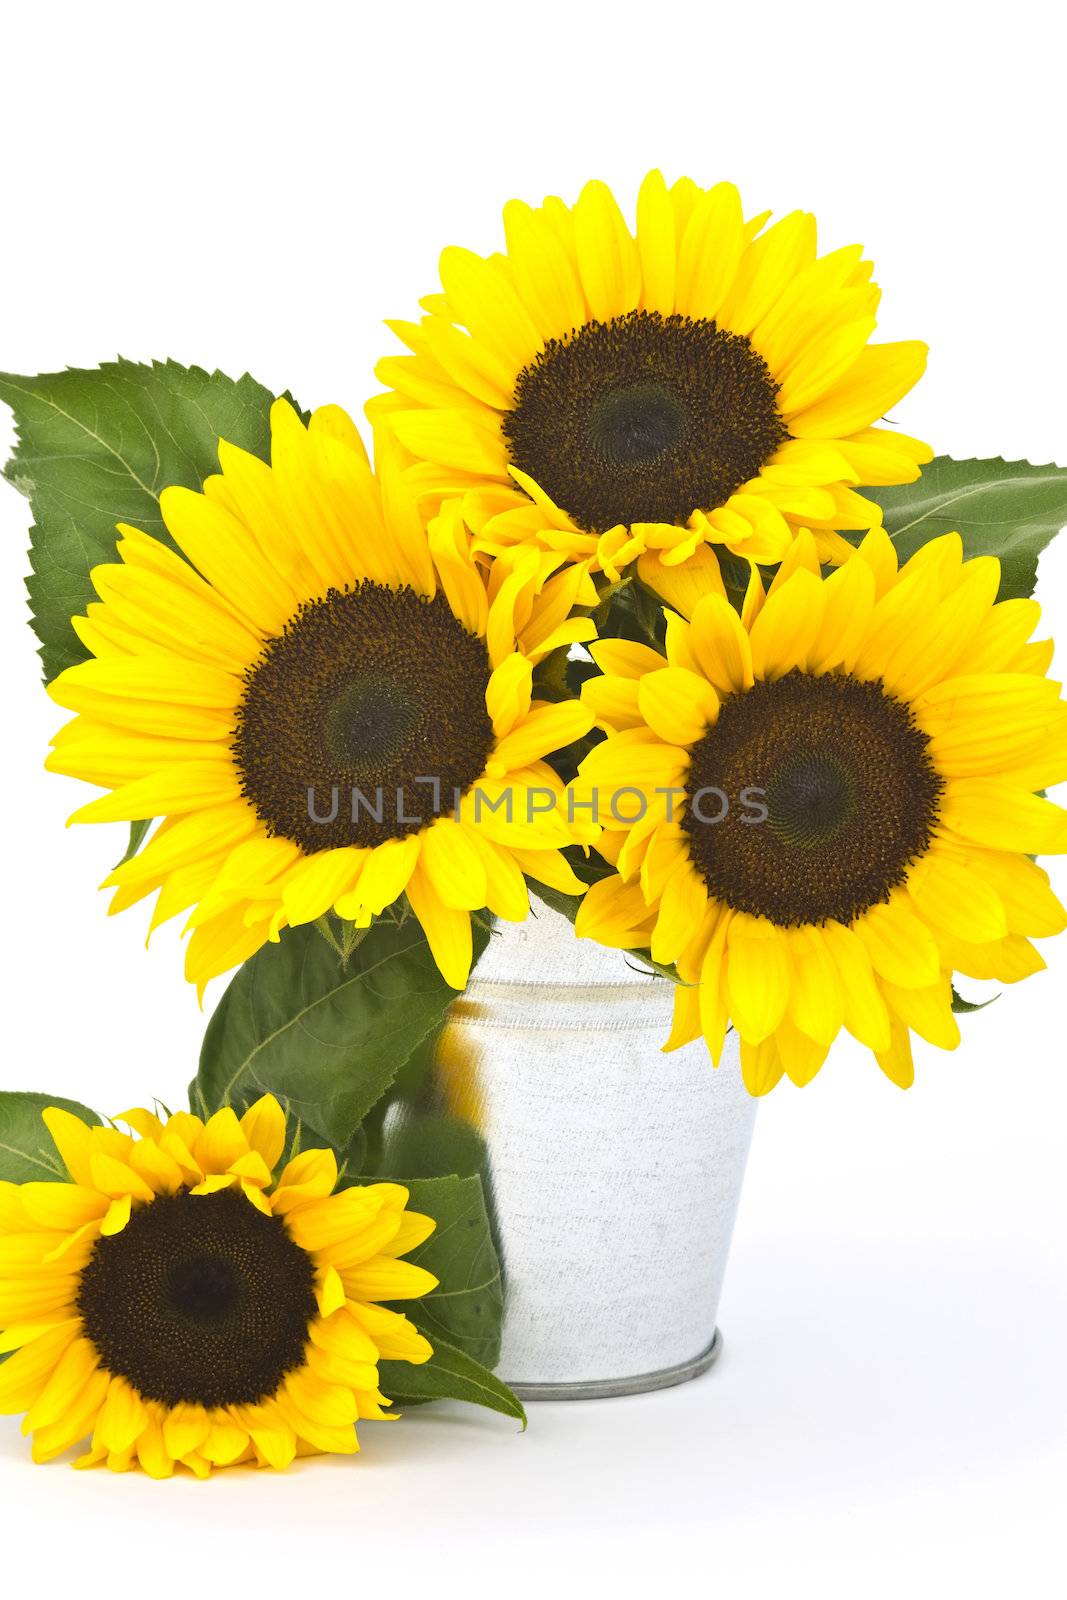 Beautiful sunflower bouquet in a bucket (Helianthus)